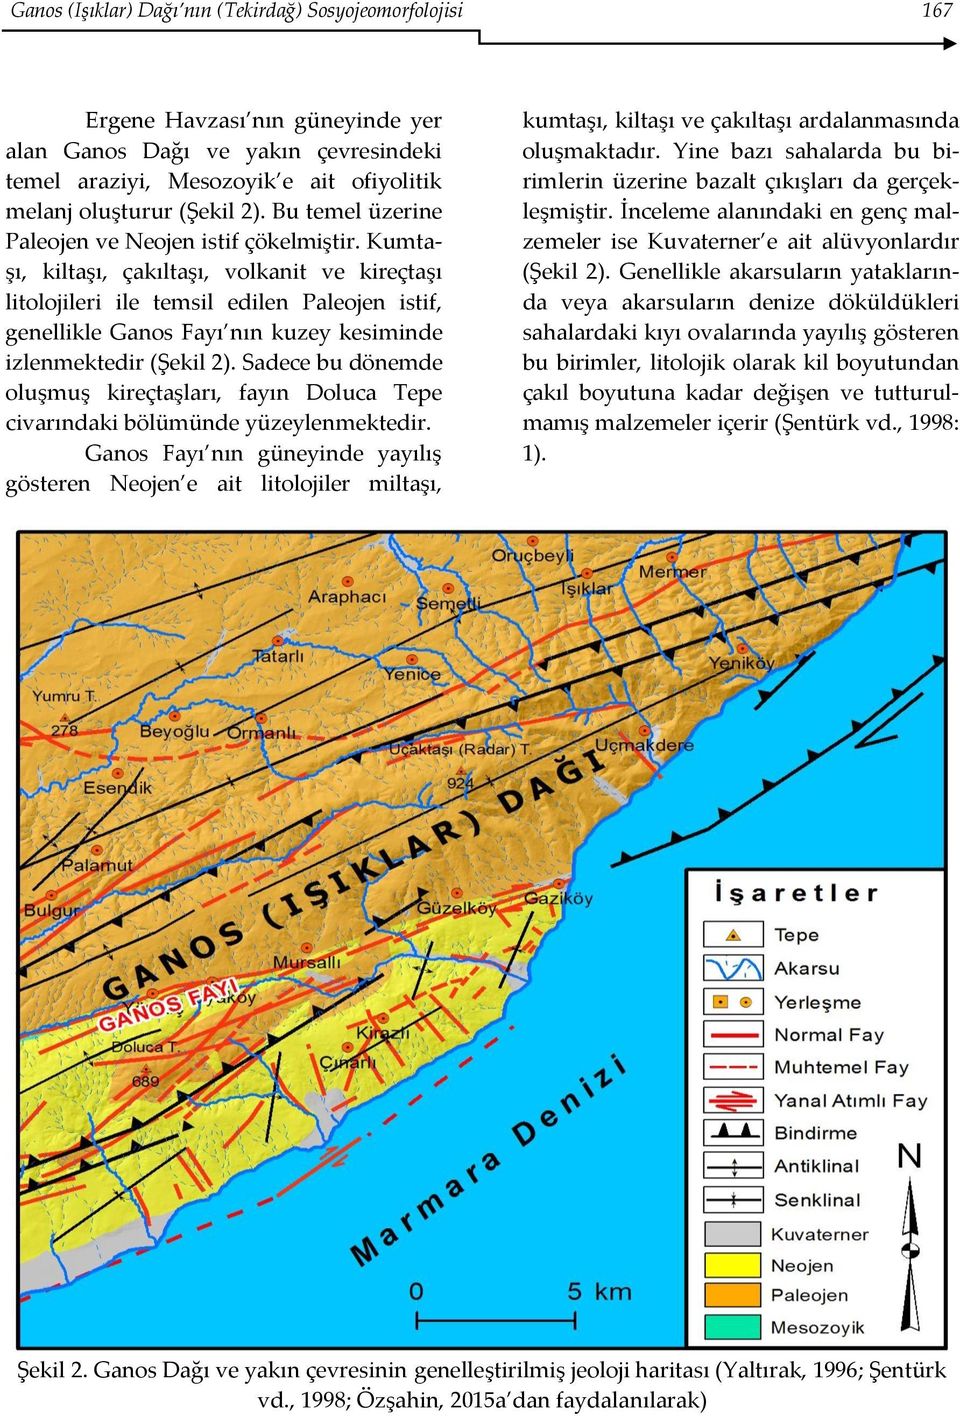 Kumtaşı, kiltaşı, çakıltaşı, volkanit ve kireçtaşı litolojileri ile temsil edilen Paleojen istif, genellikle Ganos Fayı nın kuzey kesiminde izlenmektedir (Şekil 2).